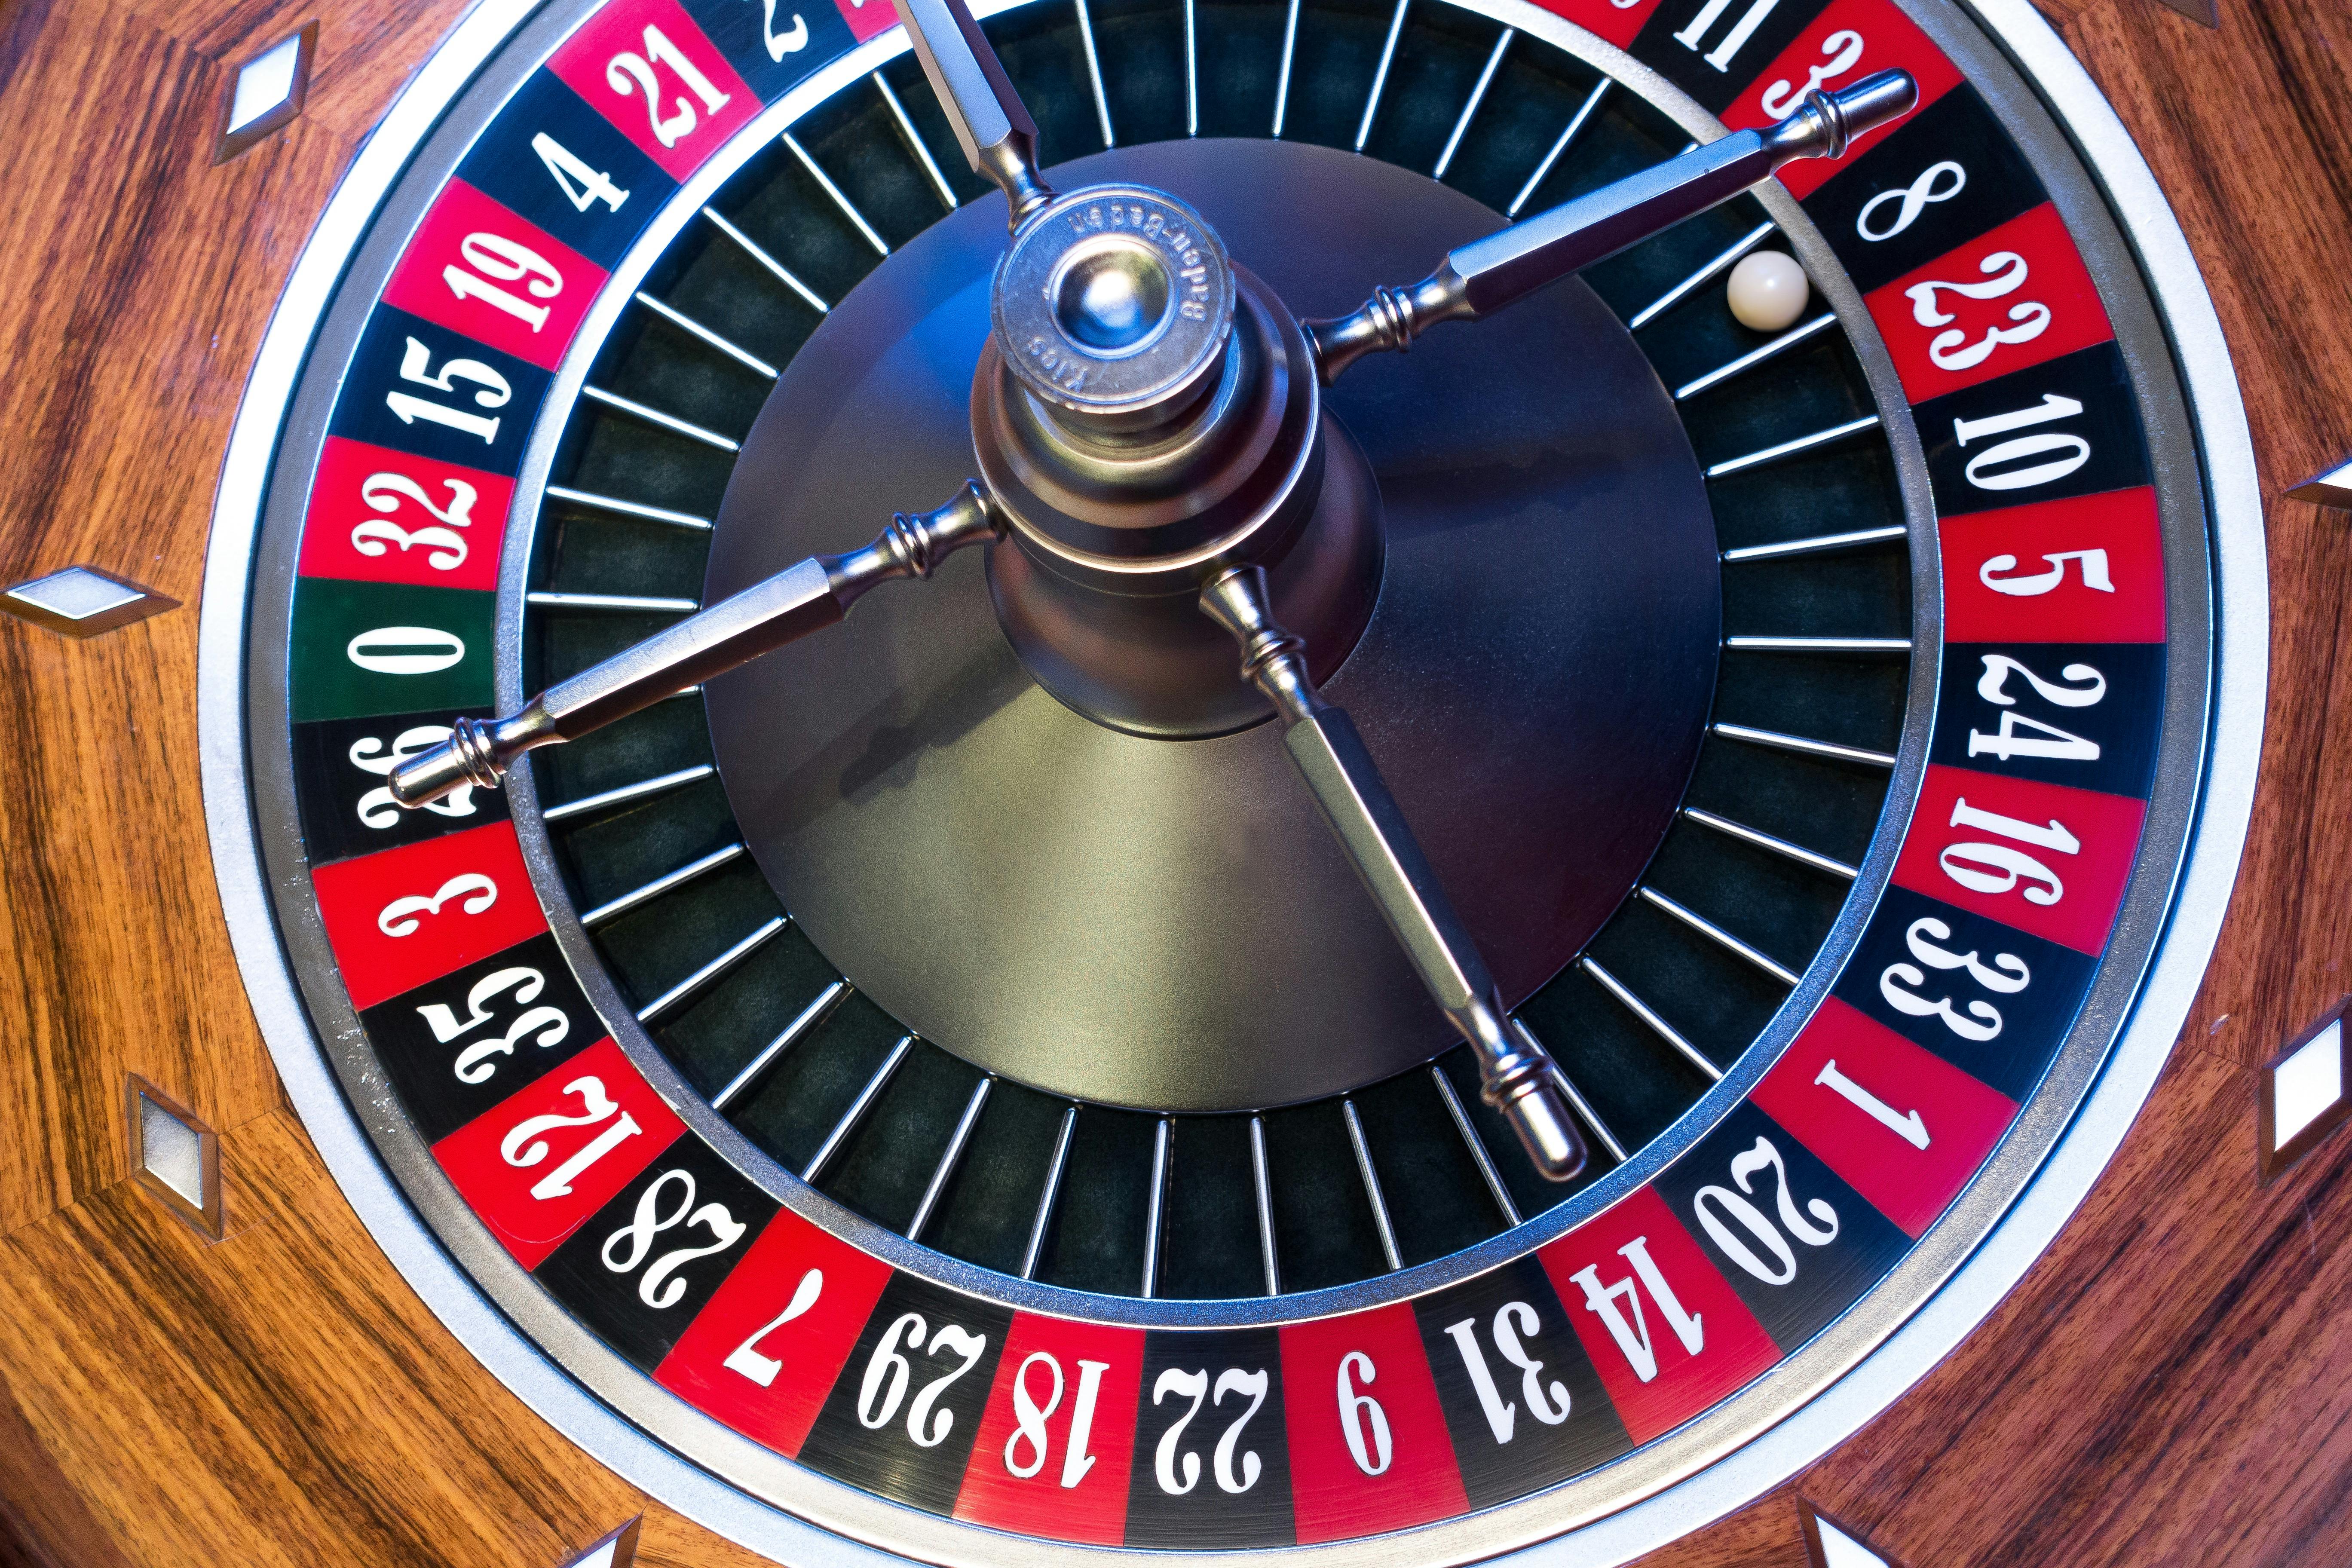 https://static.pexels.com/photos/33267/roulette-roulette-wheel-ball-turn.jpg